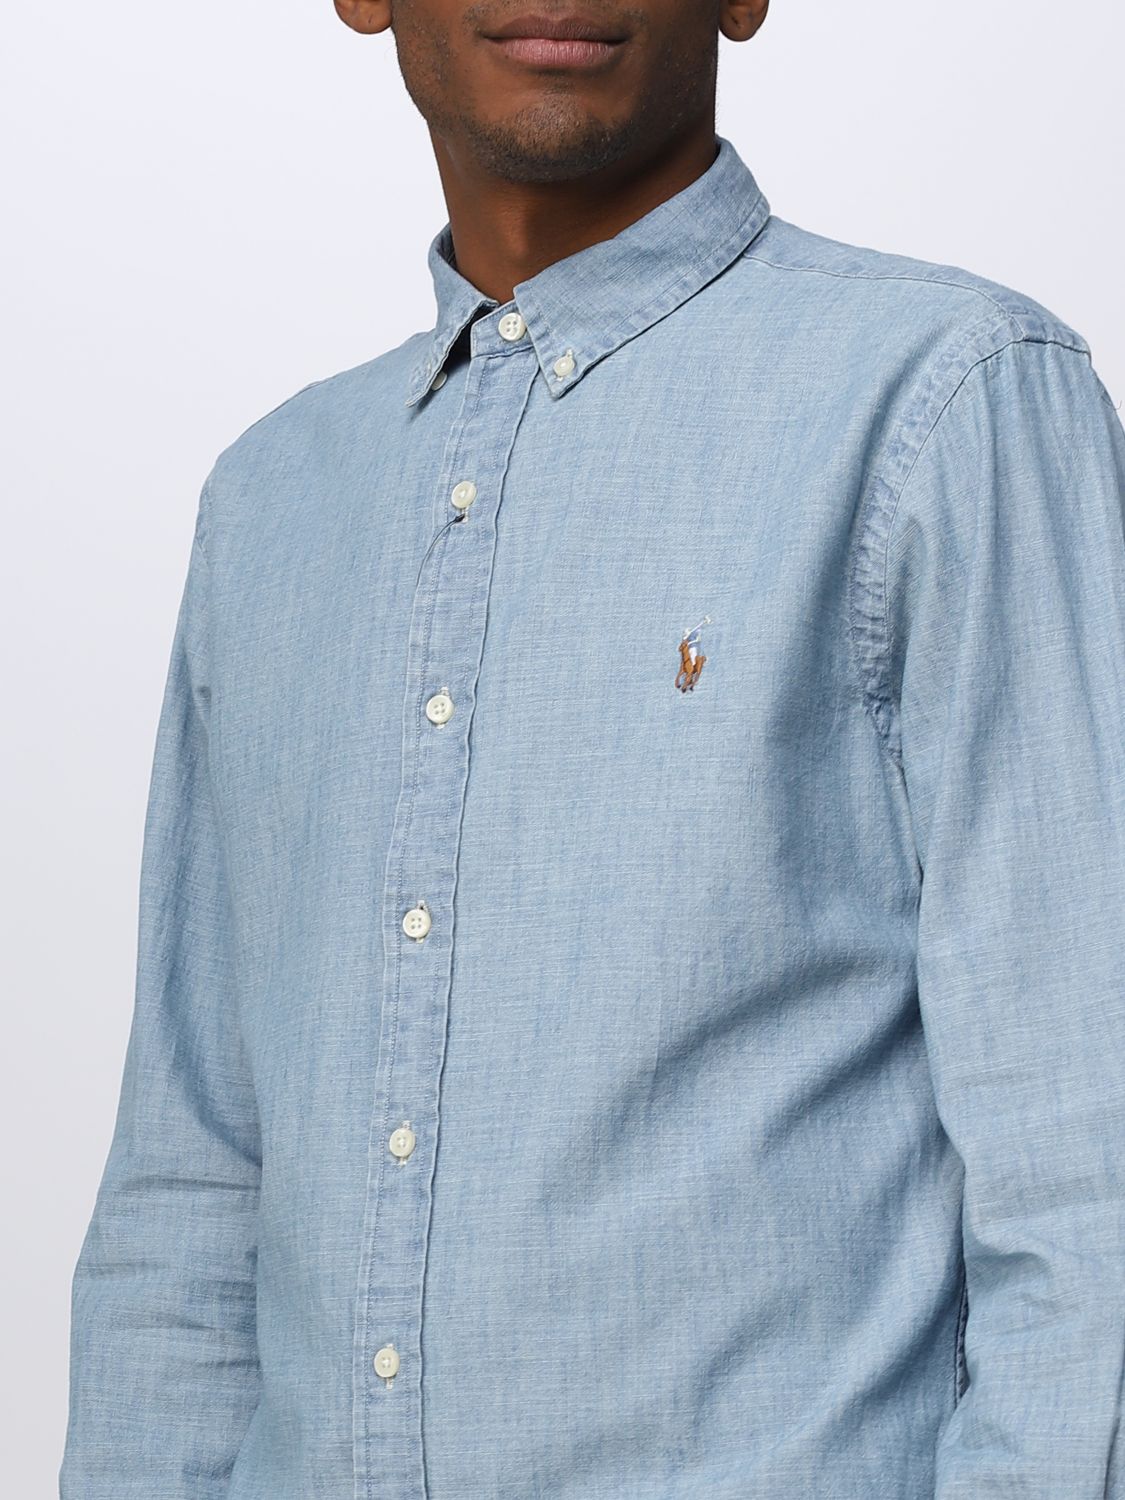 POLO RALPH LAUREN: shirt for man - Gnawed Blue | Polo Ralph Lauren ...